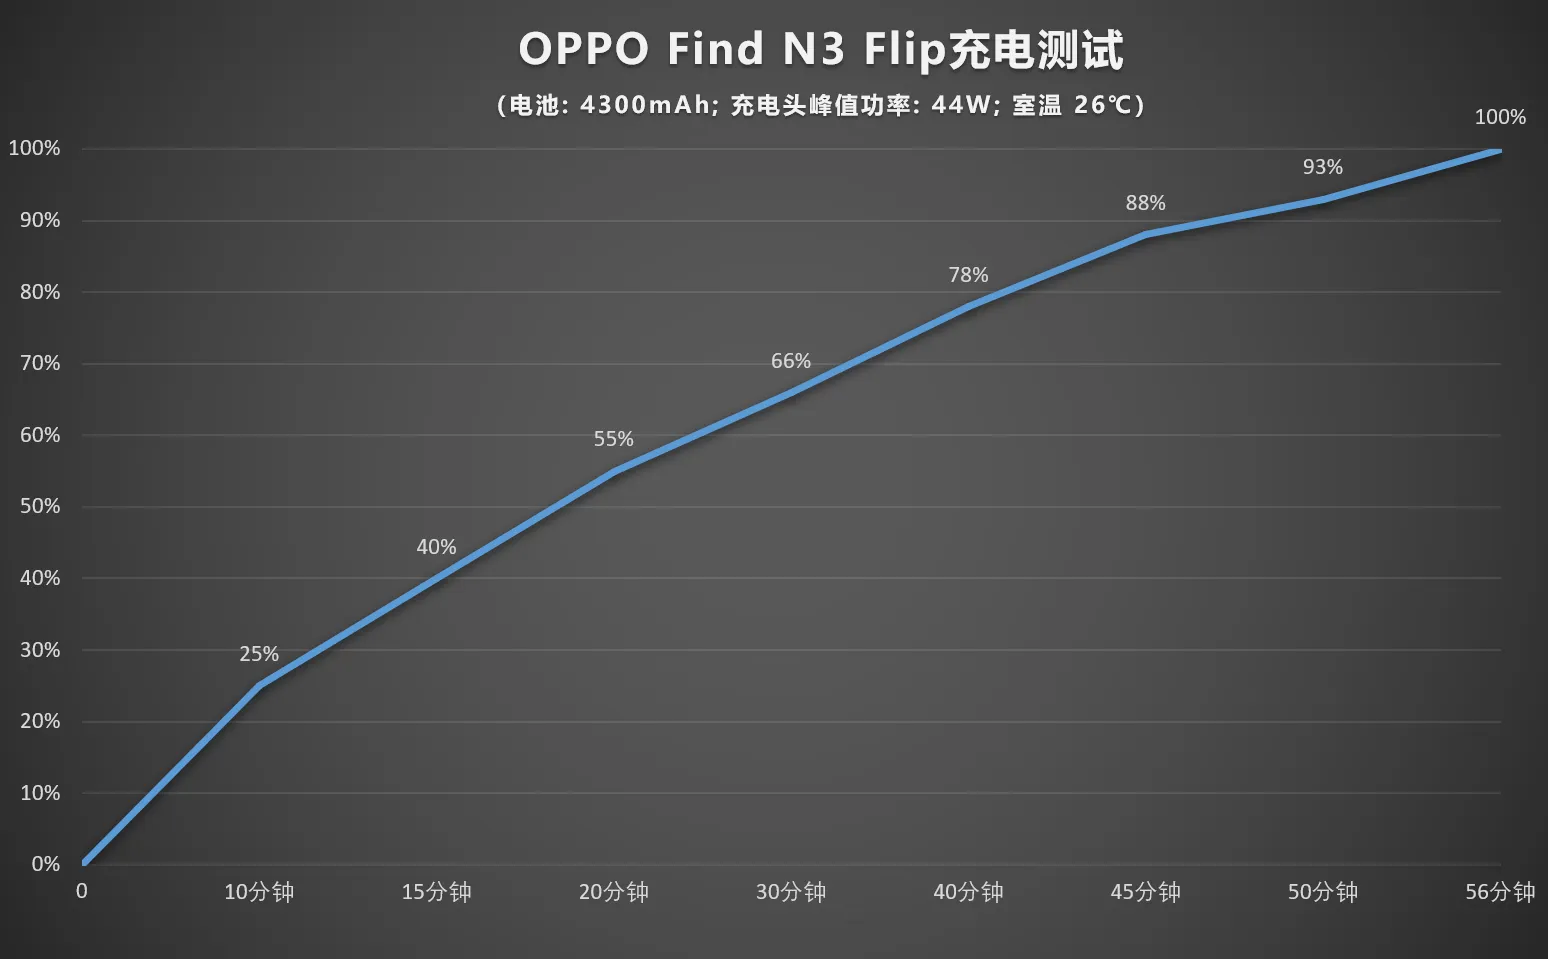 OPPO Find N3 Flip 評測